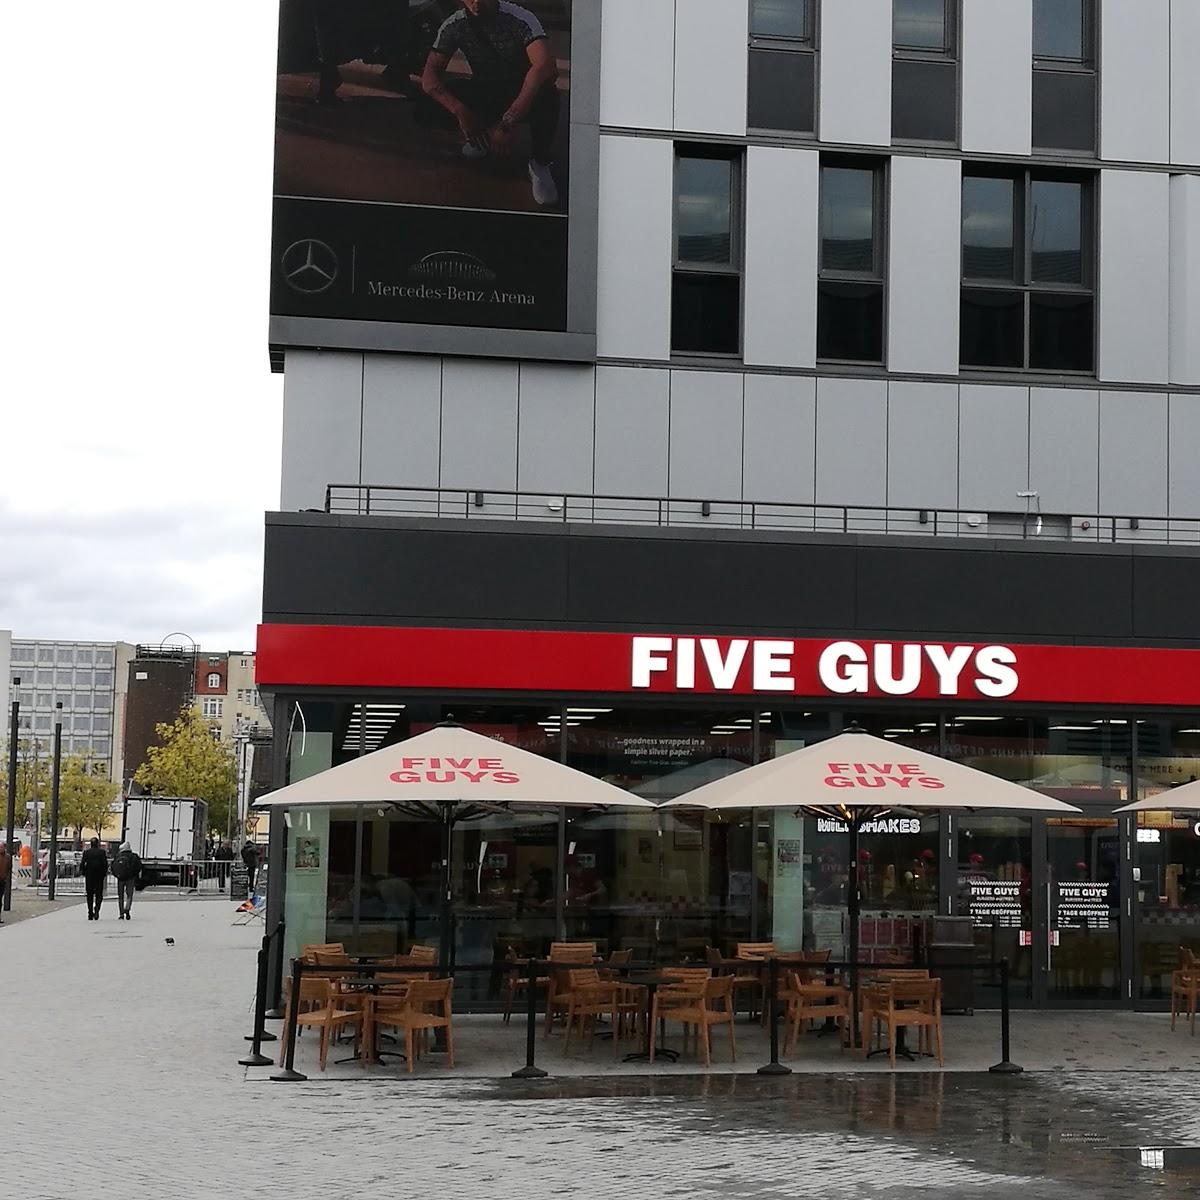 Restaurant "Five Guys" in Berlin